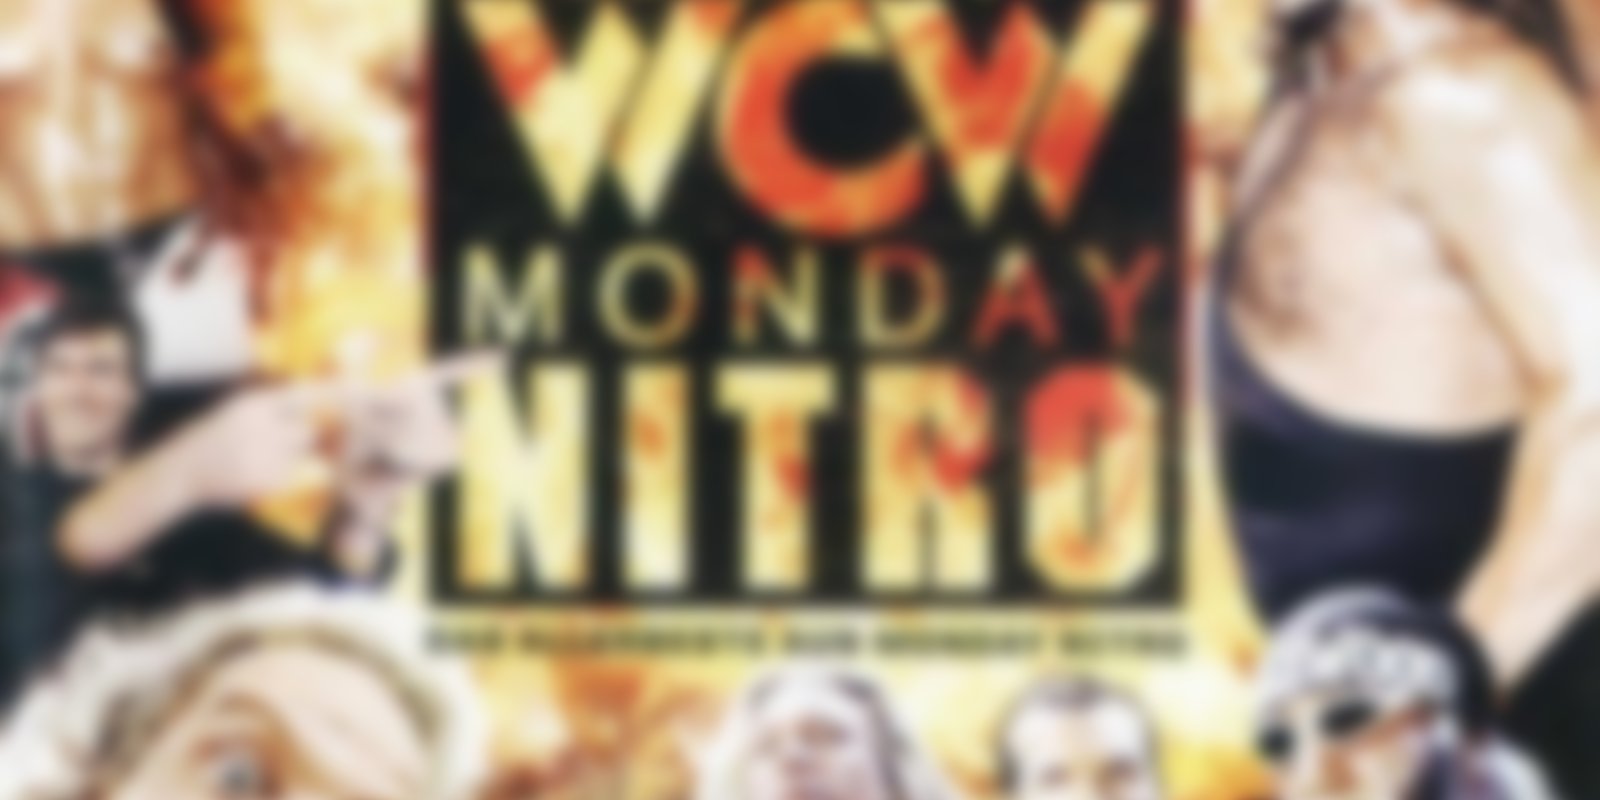 WCW - Das Allerbeste aus Monday Nitro